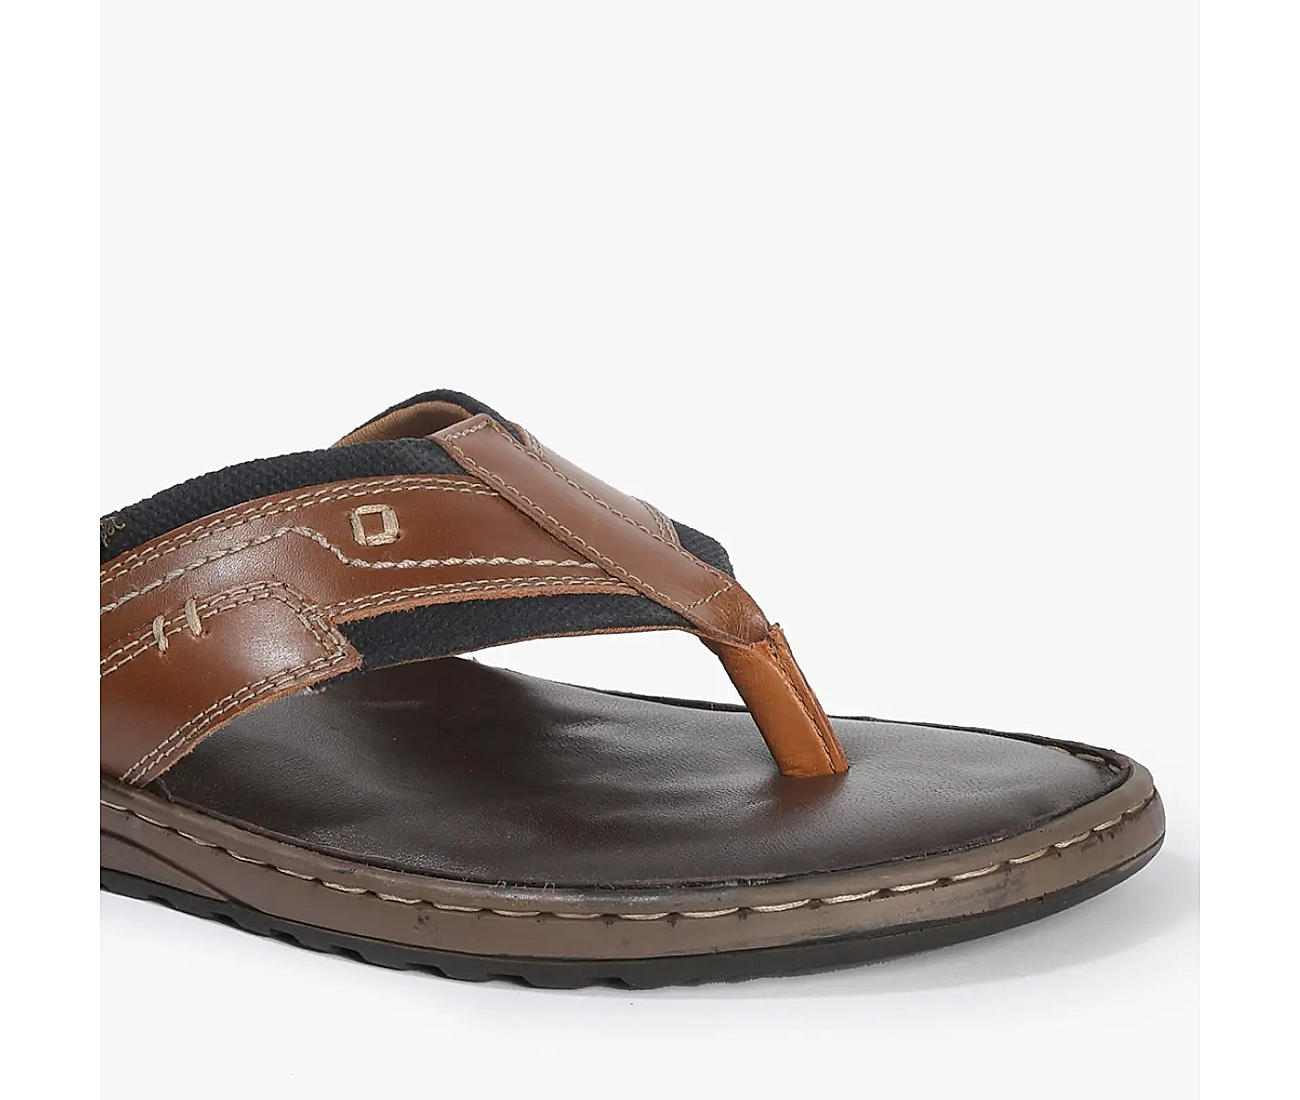 Men's Sandals - Shop Stylish Sandals for Men Now | ECCO®